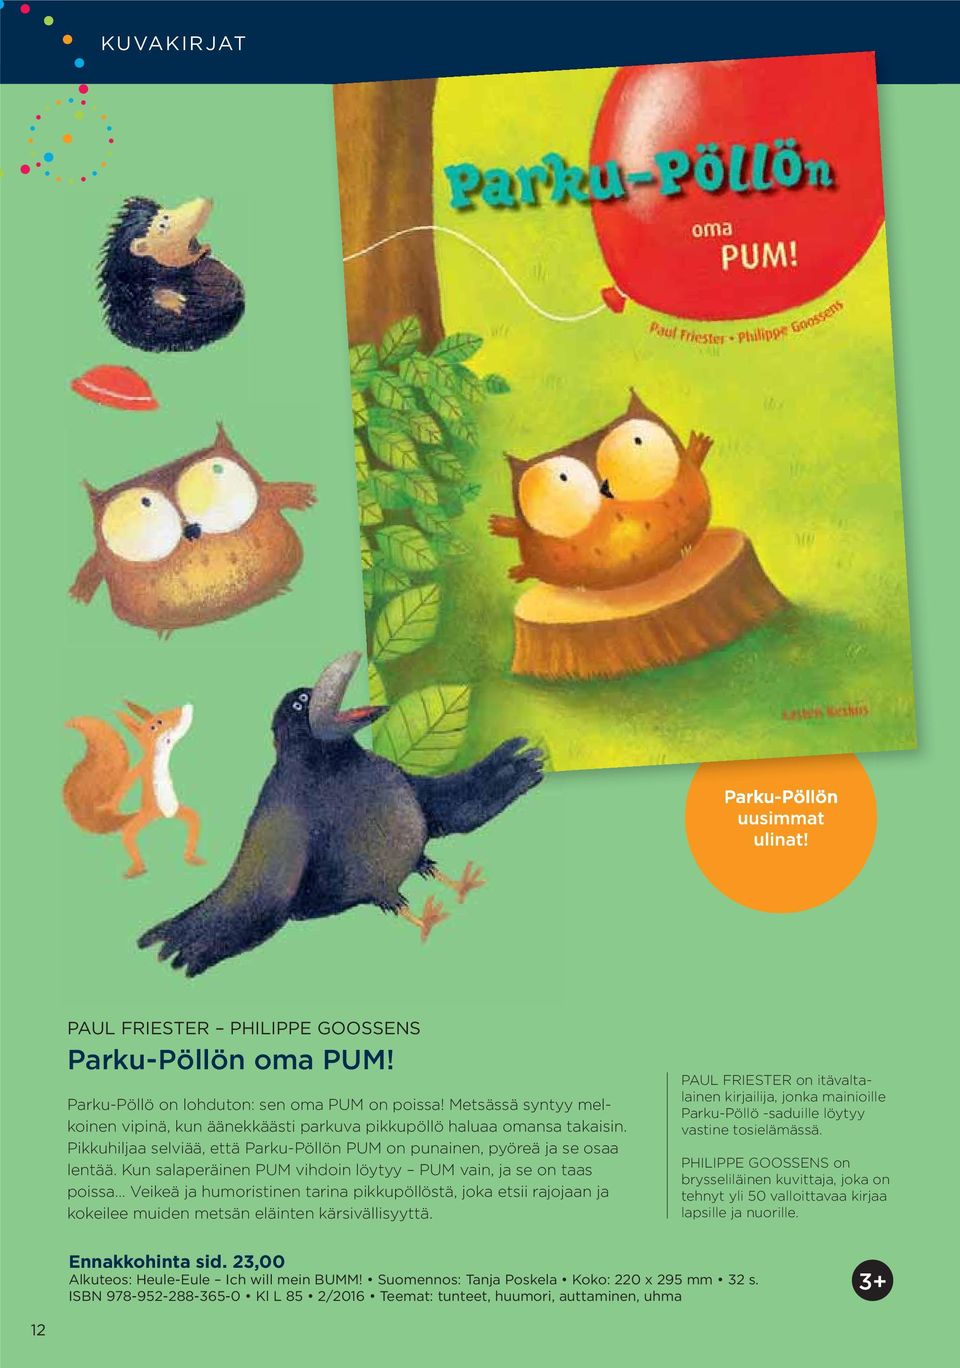 Kun salaperäinen PUM vihdoin löytyy PUM vain, ja se on taas poissa Veikeä ja humoristinen tarina pikkupöllöstä, joka etsii rajojaan ja kokeilee muiden metsän eläinten kärsivällisyyttä.